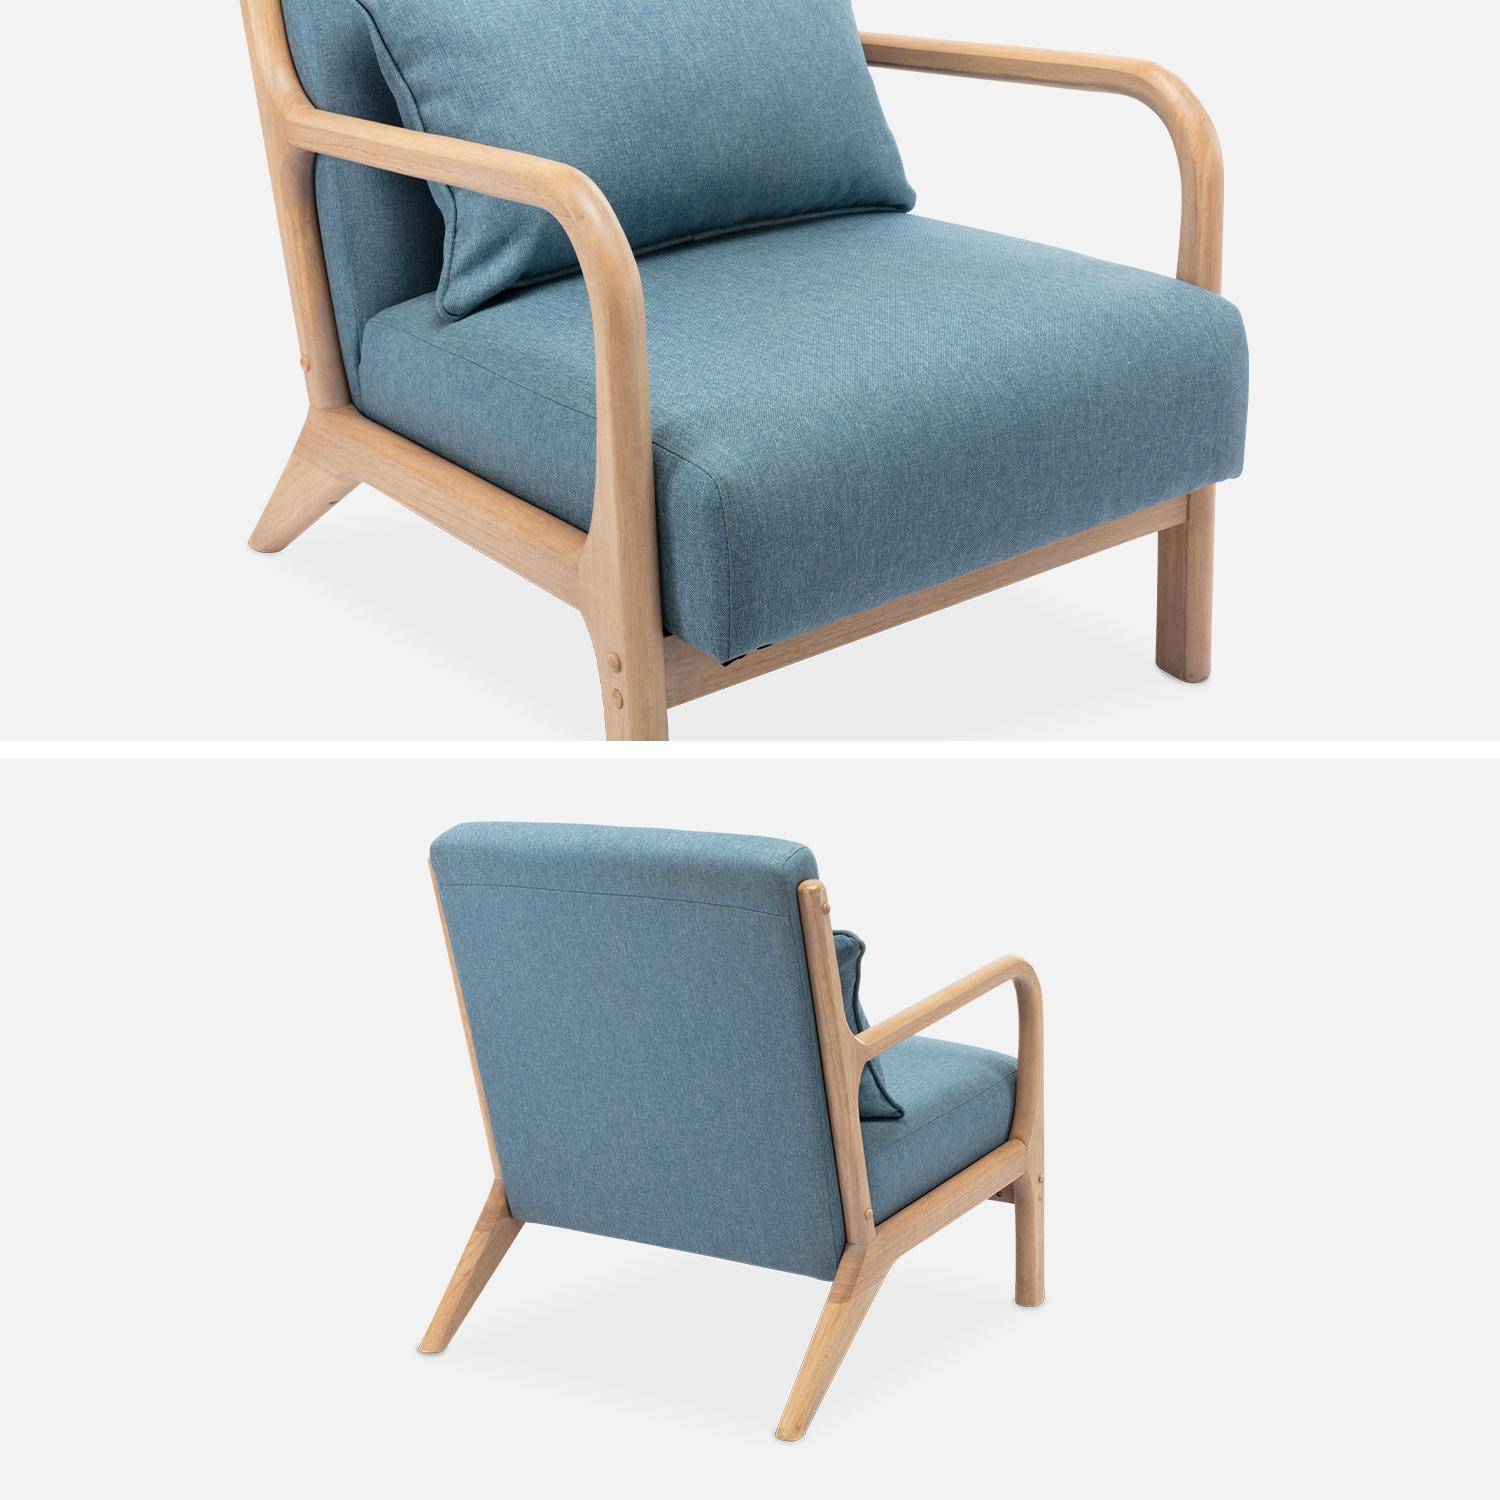 Sillón de diseño en madera y tela, 1 asiento recto fijo, patas de compás escandinavas, asiento cómodo, armazón de madera maciza, azul Photo6